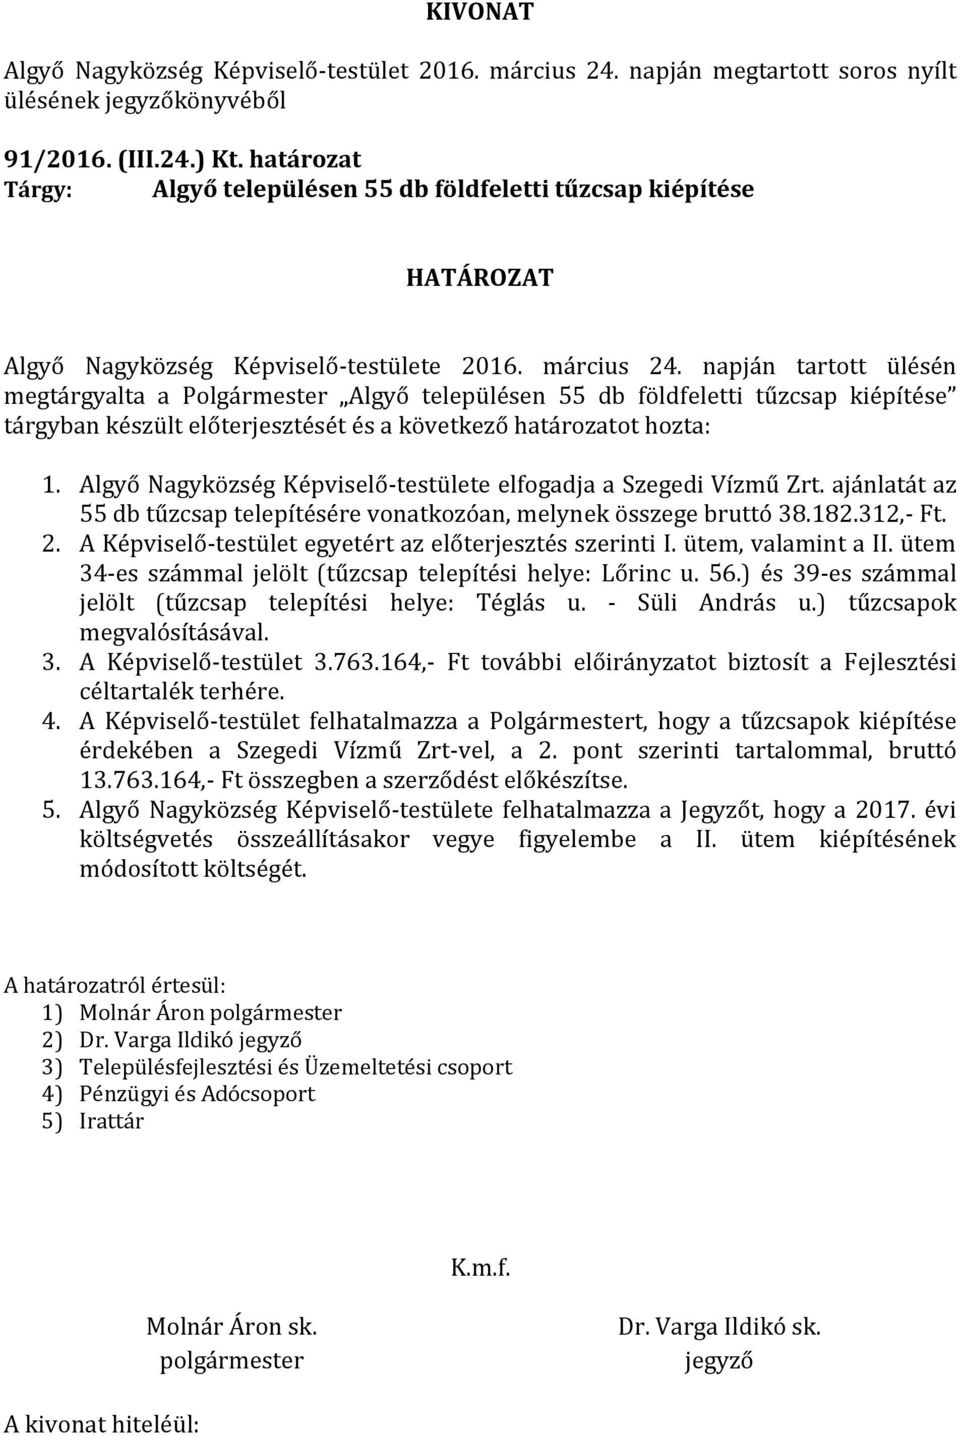 Algyő Nagyközség Képviselő-testülete elfogadja a Szegedi Vízmű Zrt. ajánlatát az 55 db tűzcsap telepítésére vonatkozóan, melynek összege bruttó 38.182.312,- Ft. 2.